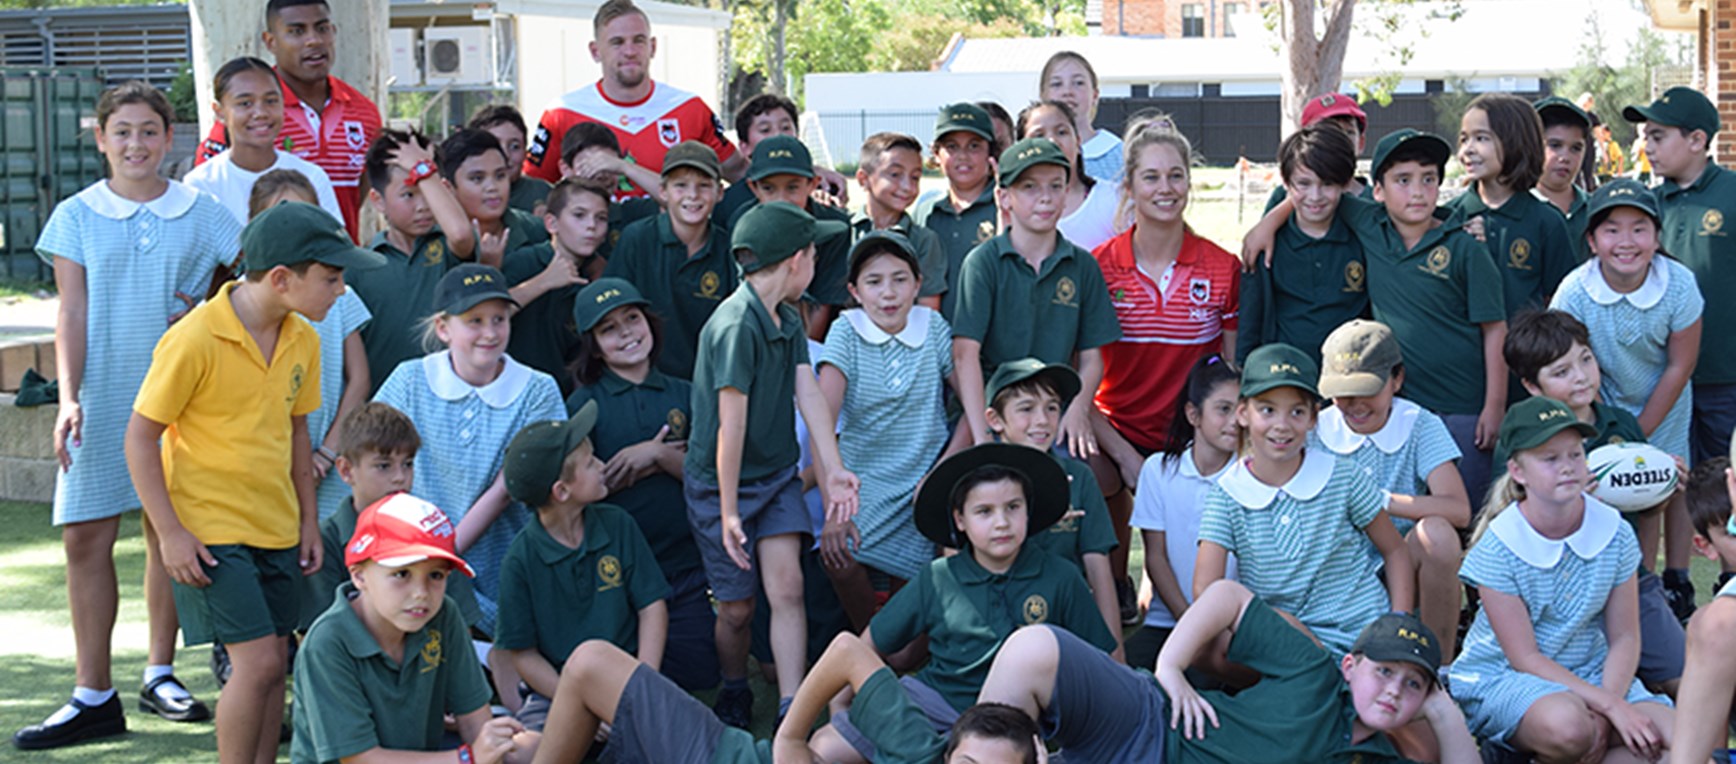 Dragons visit schools in St George region